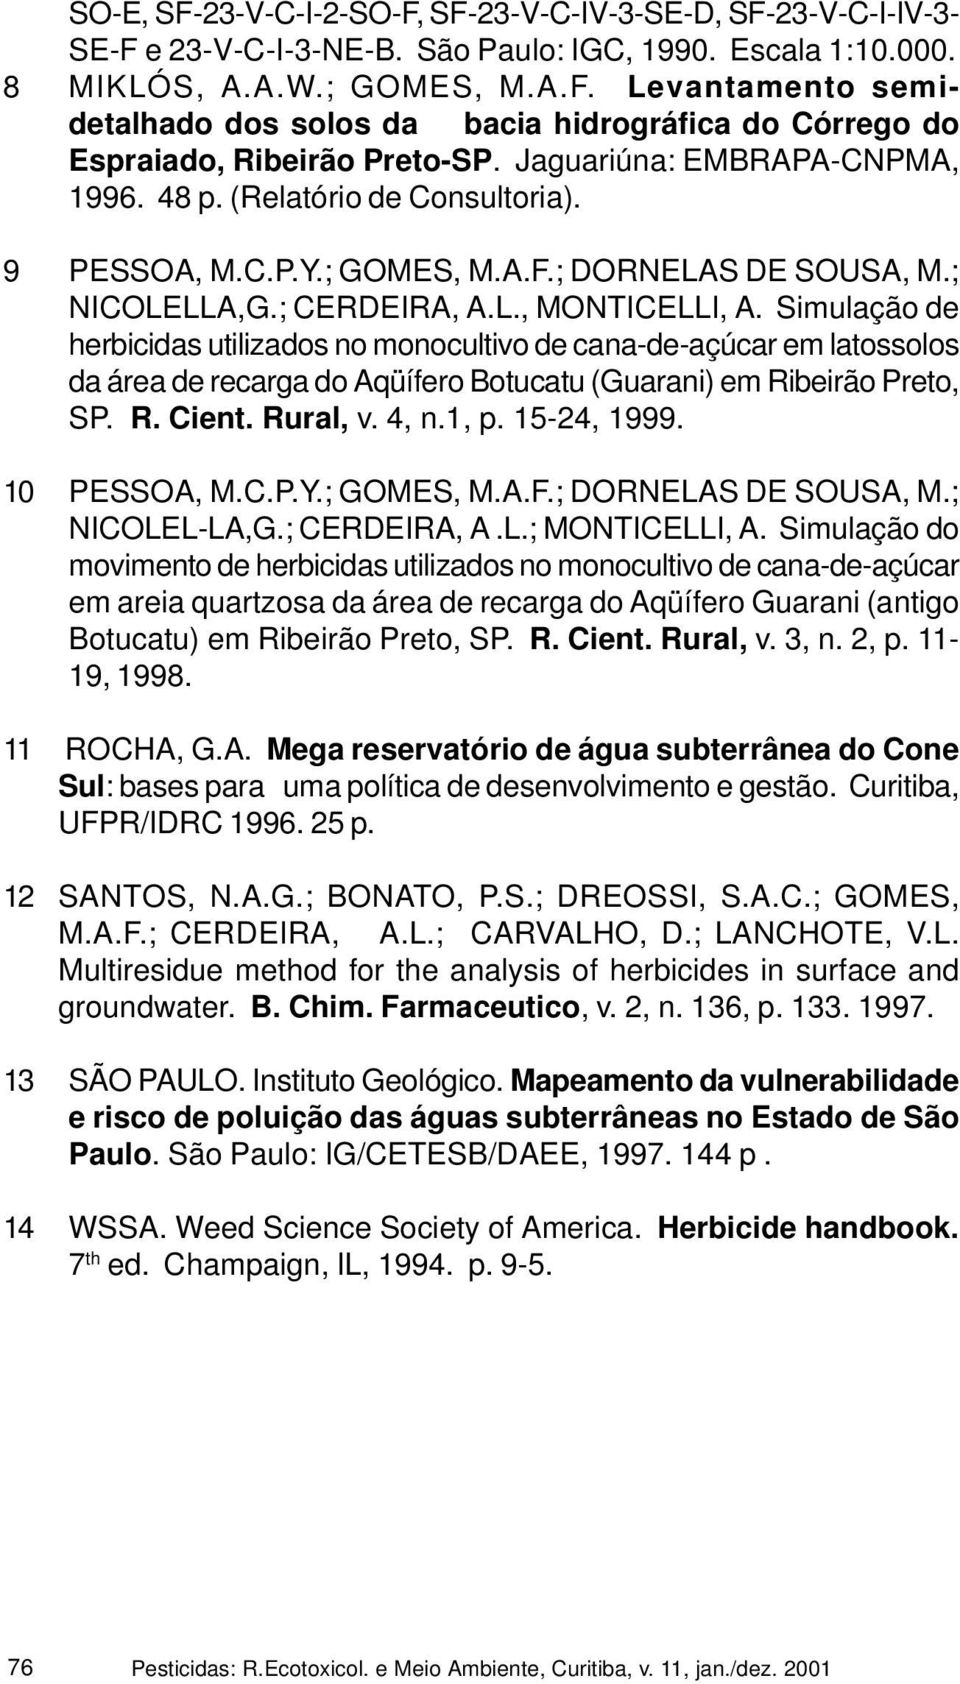 Simulação de herbicidas utilizados no monocultivo de cana-de-açúcar em latossolos da área de recarga do Aqüífero Botucatu (Guarani) em Ribeirão Preto, SP. R. Cient. Rural, v. 4, n.1, p. 15-24, 1999.